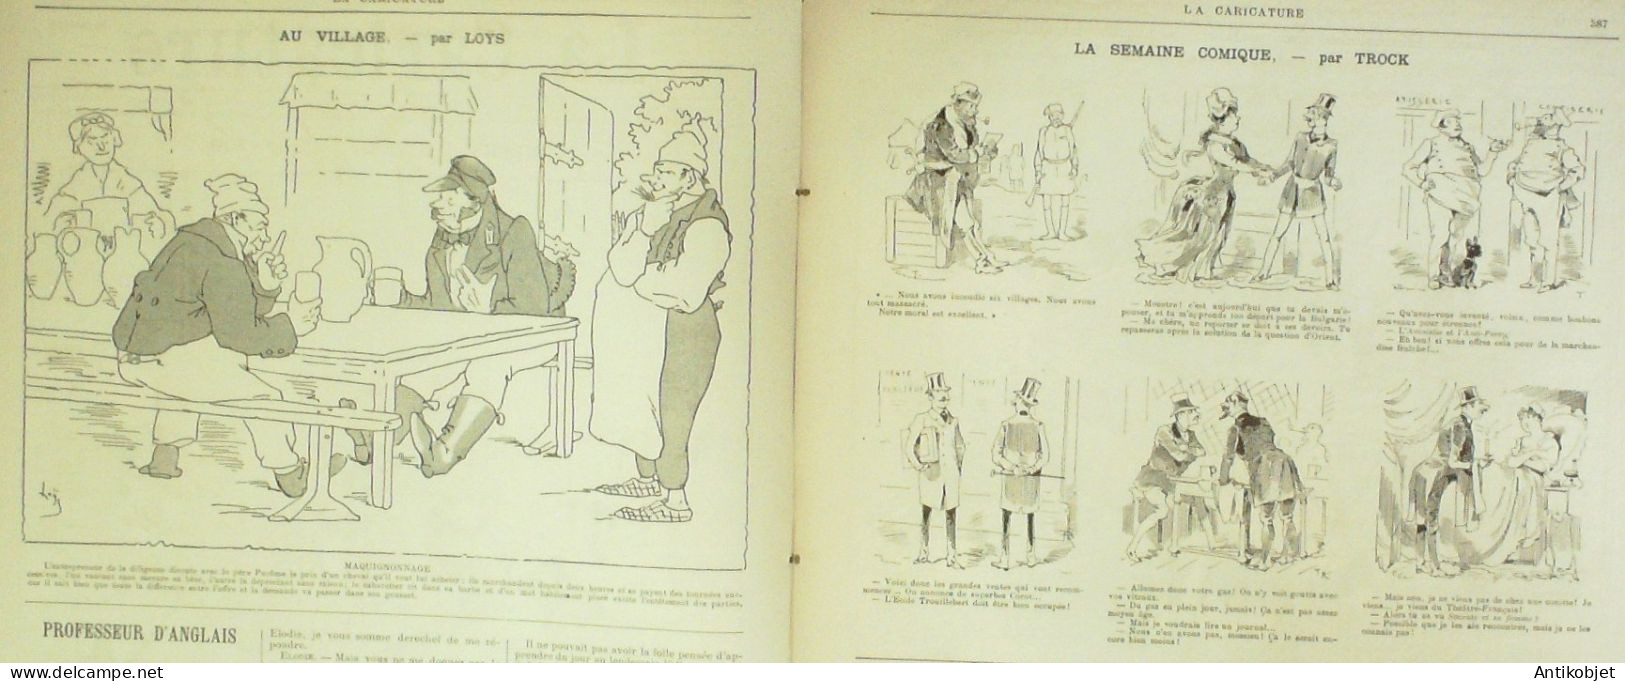 La Caricature 1885 N°310 Courses D'hiver Job Massenet Par Luque Rabelais Toto Robida - Revistas - Antes 1900